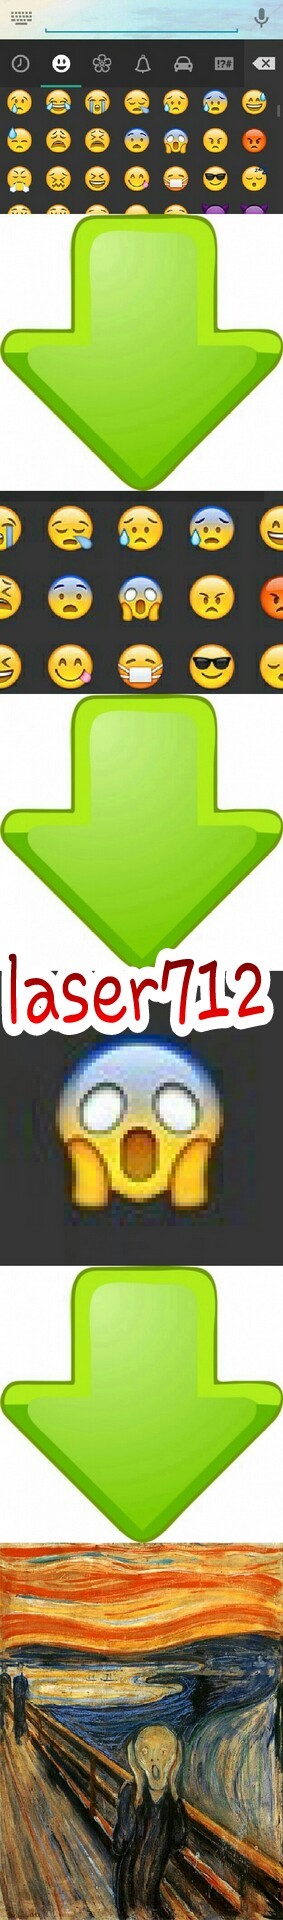 laser712 - quasi uguali - meme